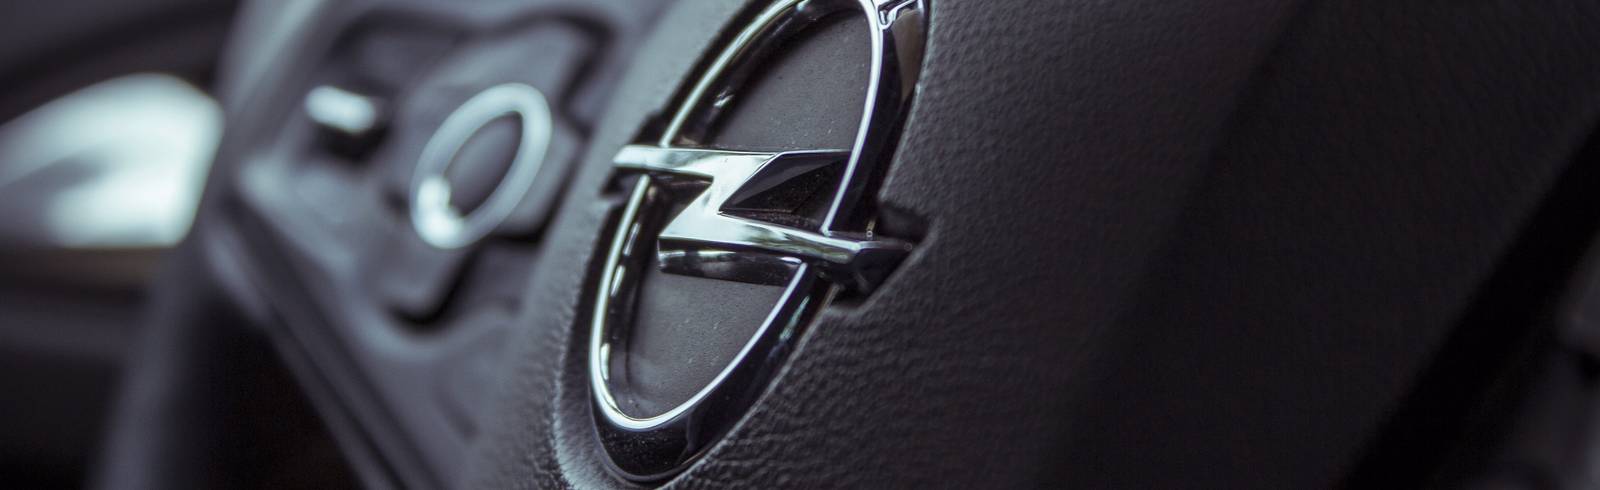 Opel: Ludwig stellt Hilfspaket vor